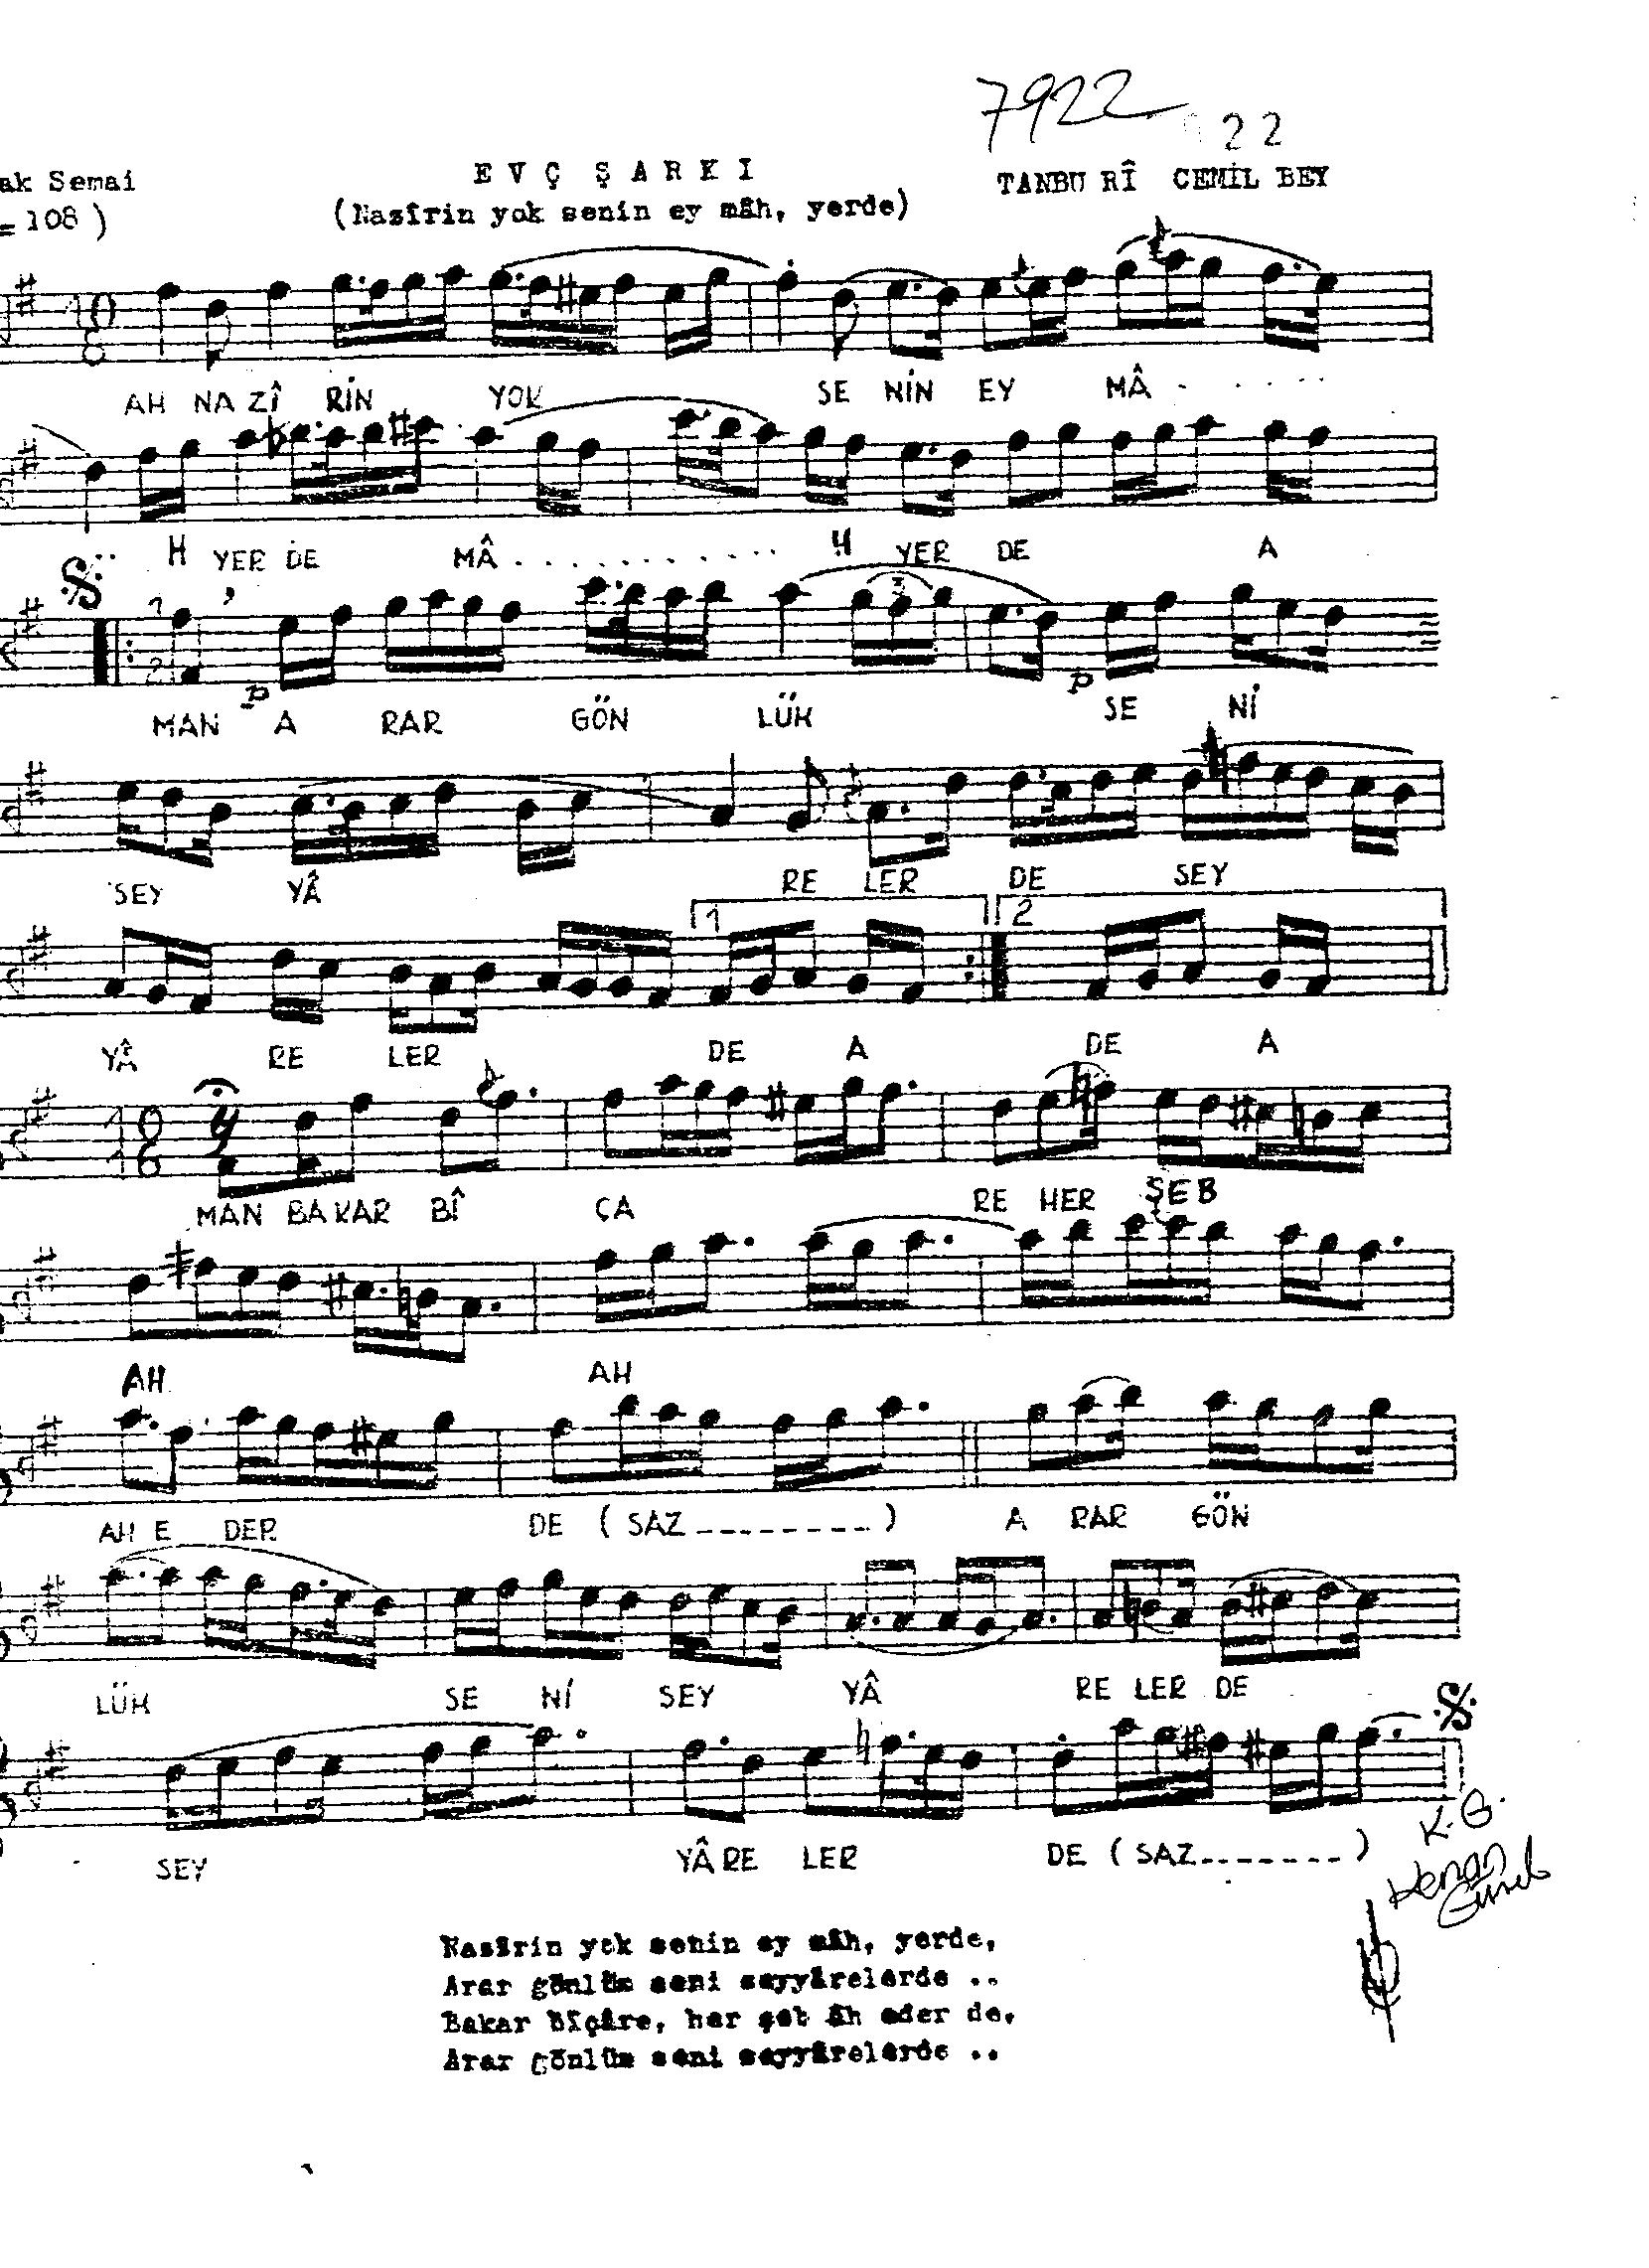 Evc - Şarkı - Tanburi Cemil Bey - Sayfa 1